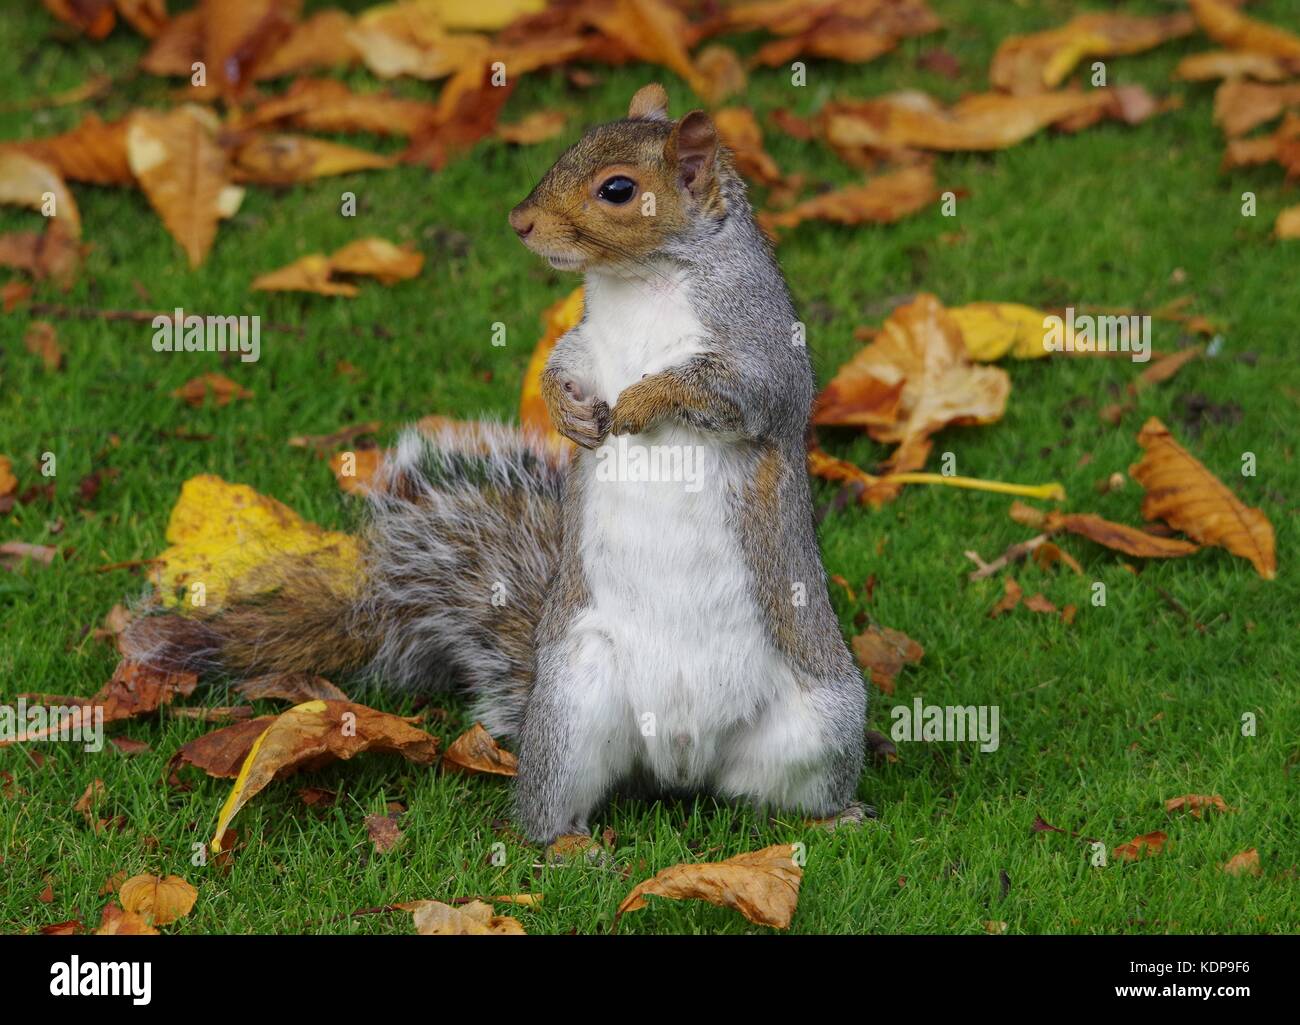 Écureuil gris debout sur l'herbe Feuilles d'automne sur le sol Banque D'Images